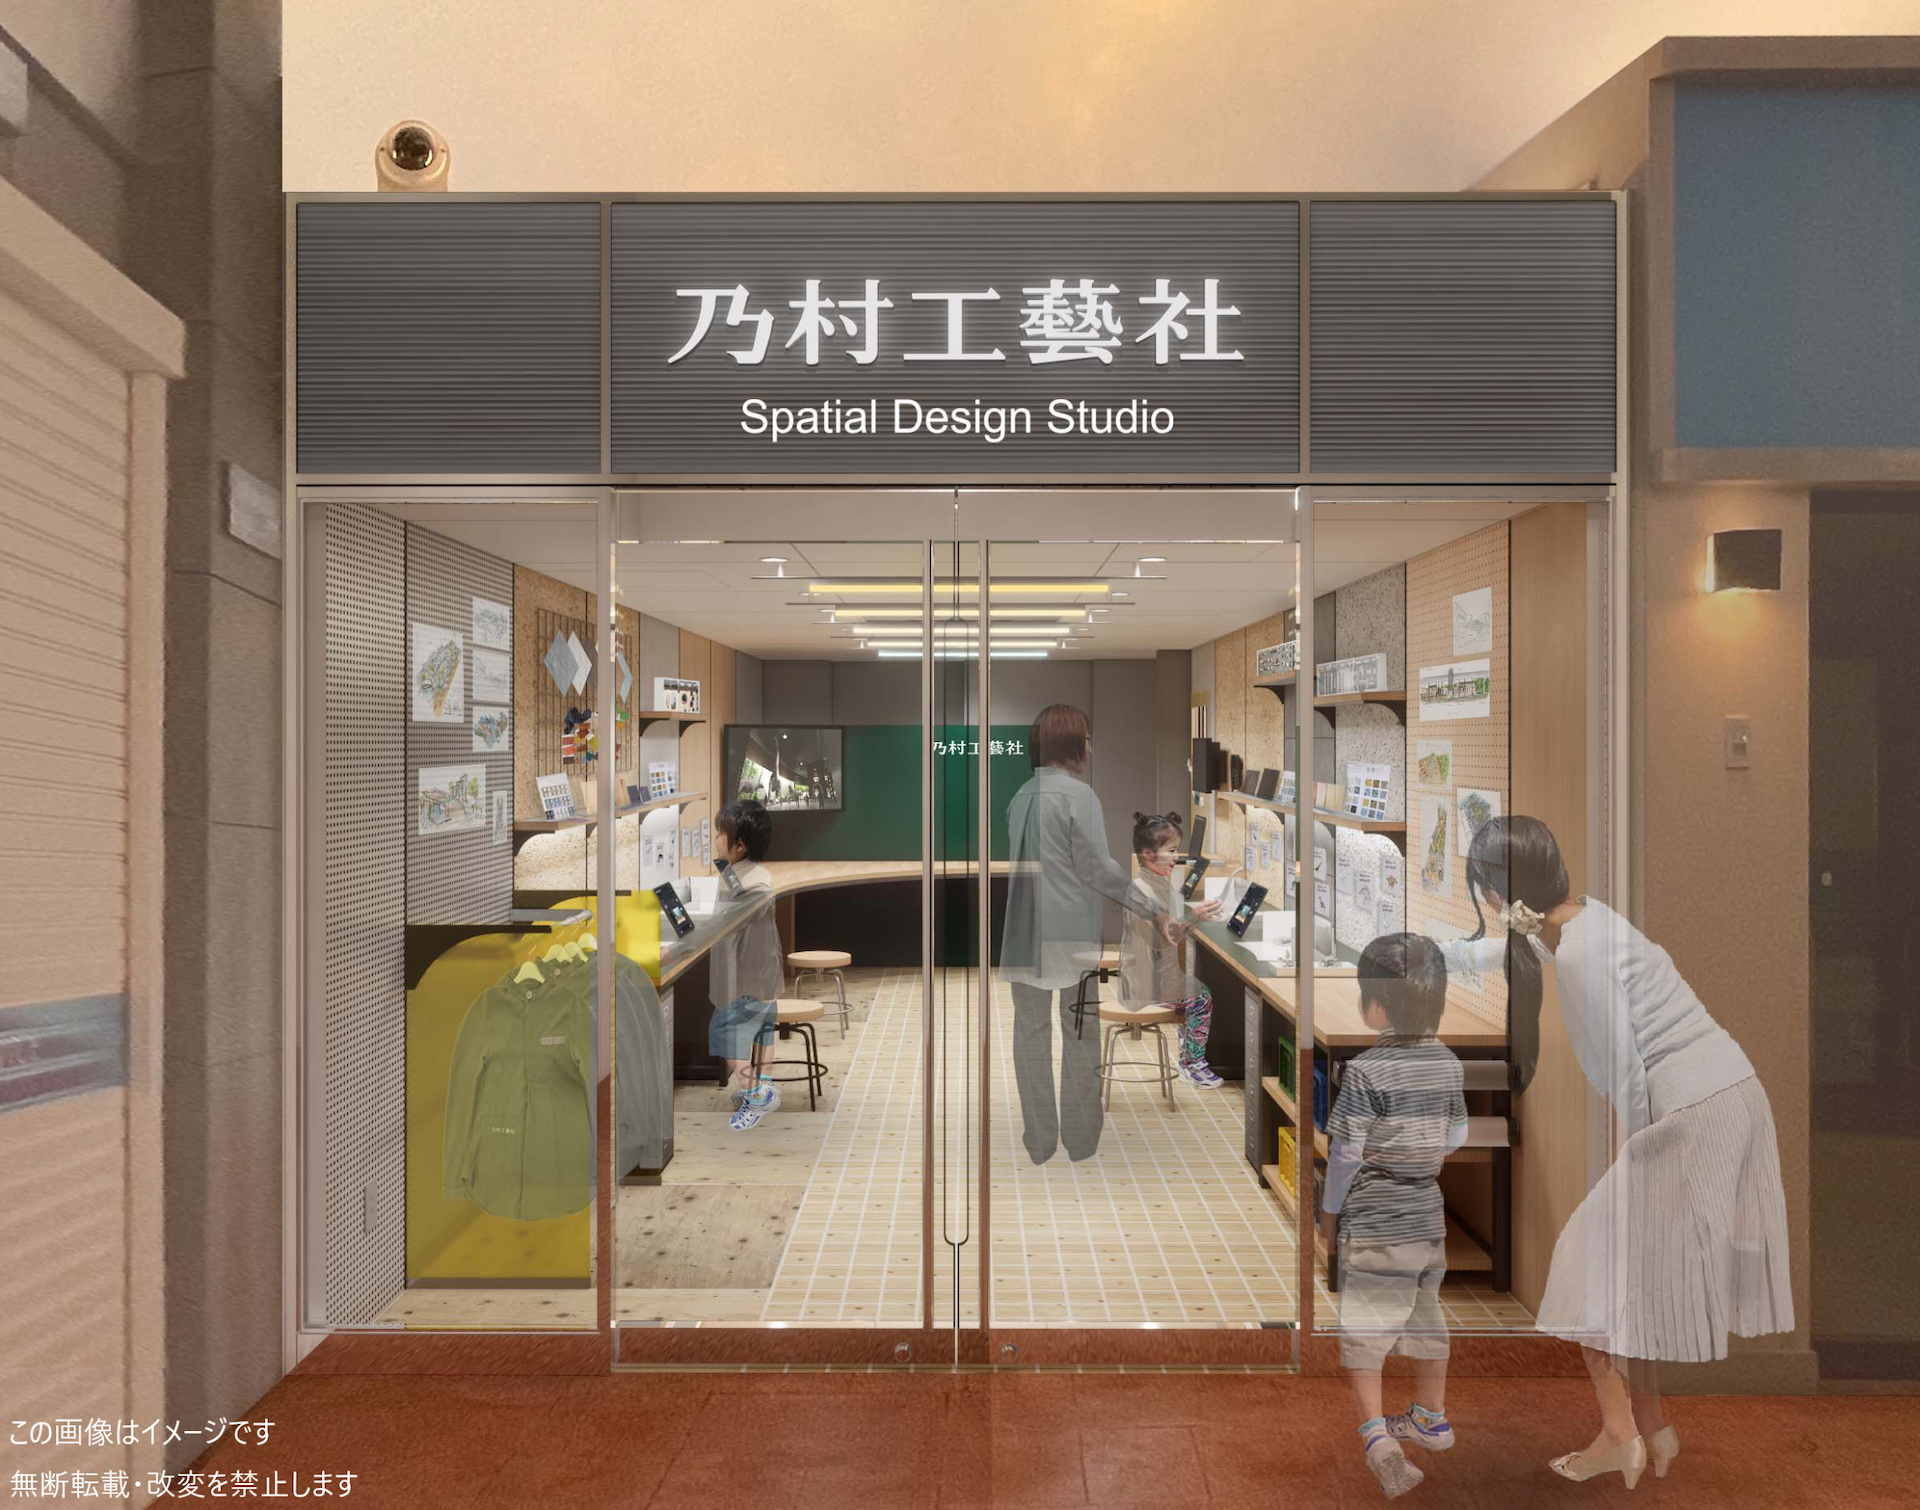 ニュースリリース：乃村工藝社がキッザニア福岡にパビリオンを出展 　「空間デザインスタジオ」 2023年10月31日オープン　～「空間デザイナー」の仕事体験が登場～